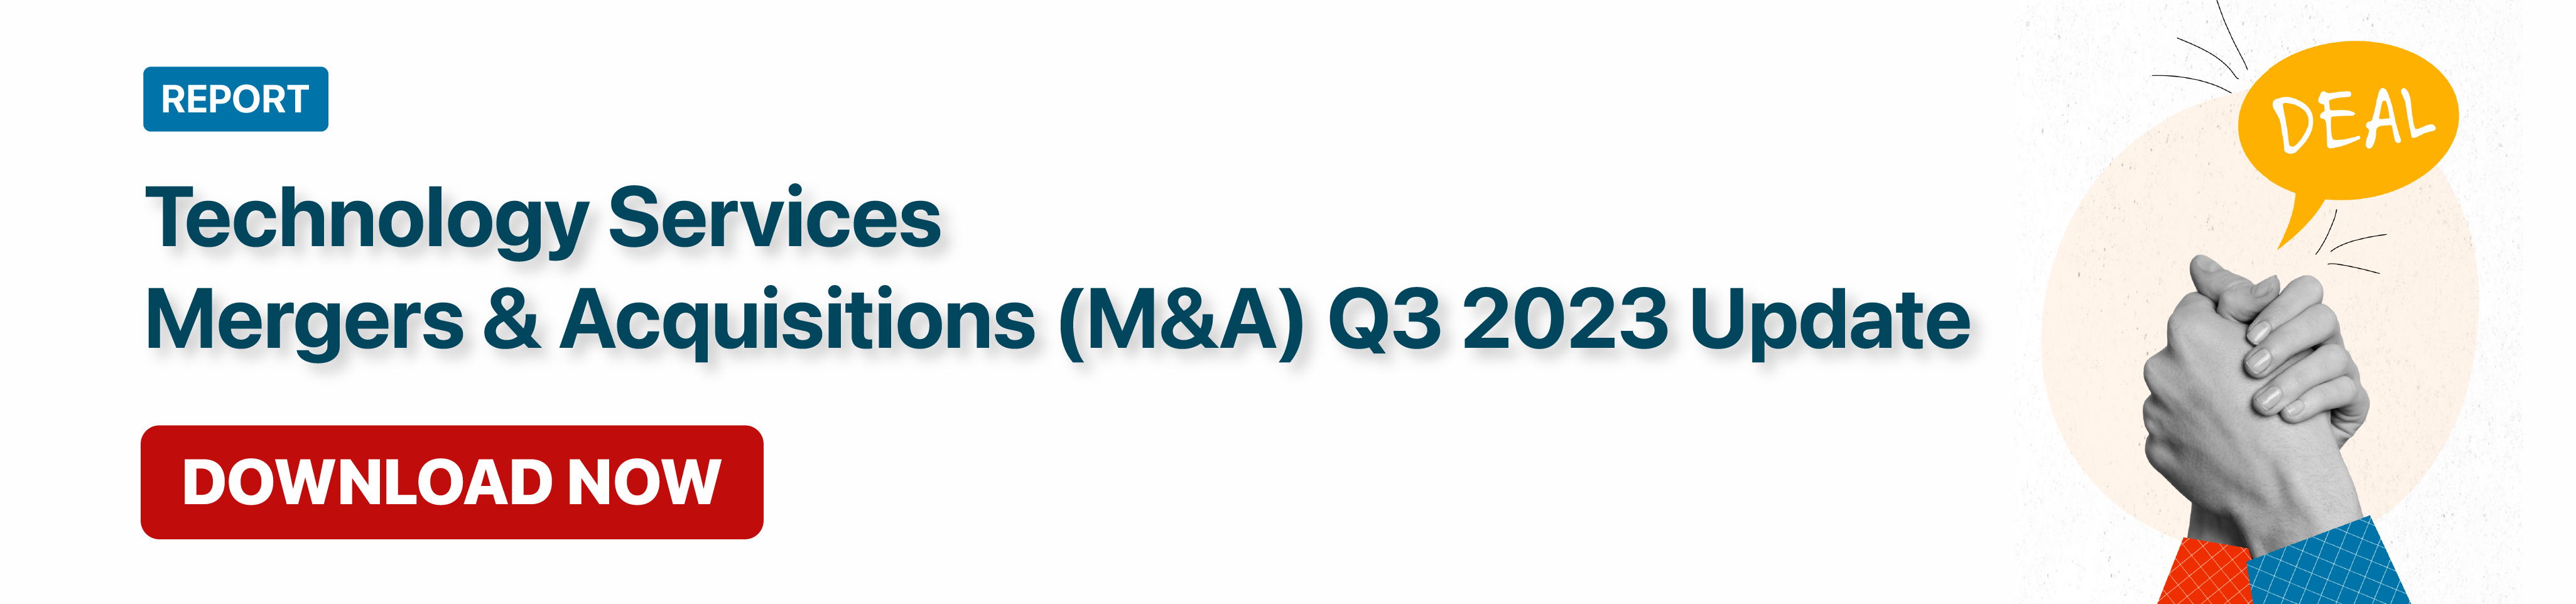 Technology Services Mergers & Acquisitions (M&A) Q3 2023 CTA